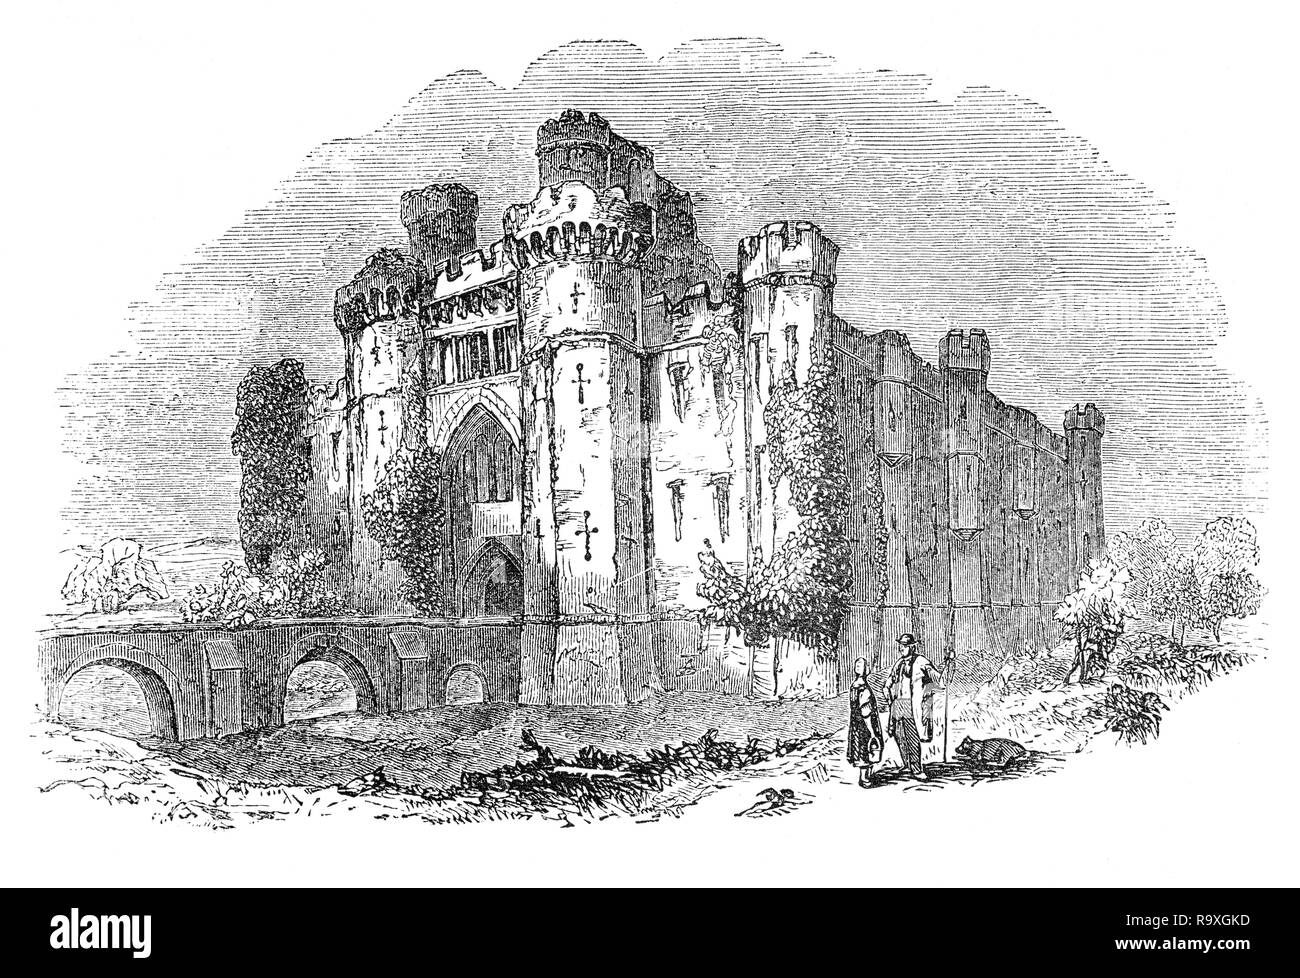 Château de Herstmonceux est un château en brique, datant du 15ème siècle, près de Herstmonceux, East Sussex, Angleterre. Il est l'un des plus anciens bâtiments de brique importante encore debout en Angleterre, et a été construit à l'aide de briques tirées de l'argile locale, par les constructeurs à partir de la Flandre. La construction a commencé sous le propriétaire d'alors, Sir Roger Fiennes et puis, à partir de son décès en 1449, par son fils, Seigneur Juan Vicente, l'accent a été sur la grandeur et le confort au lieu de la défense. Aujourd'hui, le château de Herstmonceux est utilisé par le Centre d'étude international Bader de l'Université Queen's, Canada. Banque D'Images